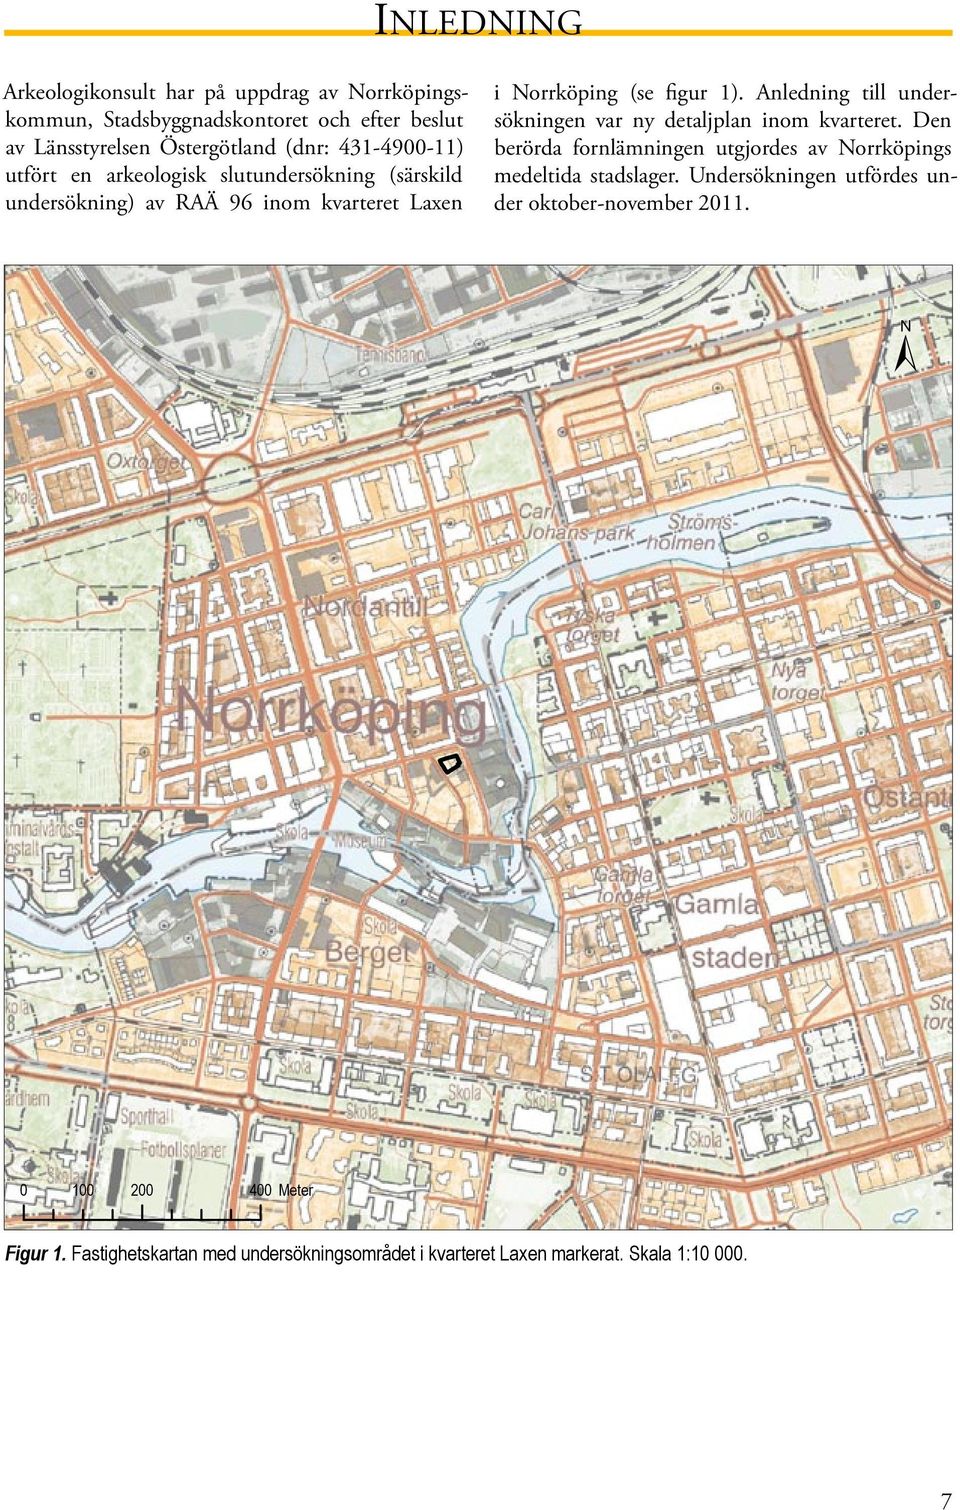 Anledning till undersökningen var ny detaljplan inom kvarteret. Den berörda fornlämningen utgjordes av Norrköpings medeltida stadslager.